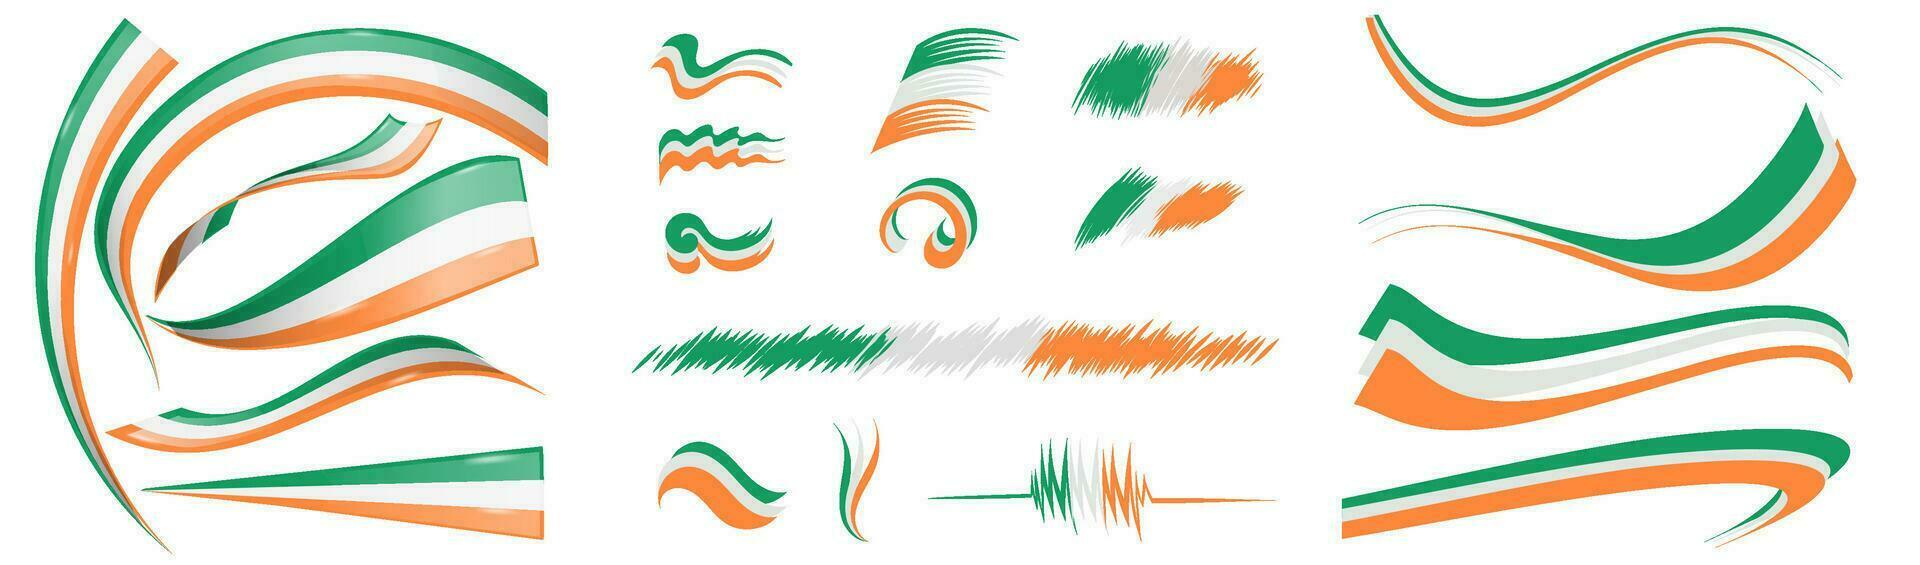 Irland Flagge einstellen Elemente, Vektor Illustration auf ein Weiß Hintergrund